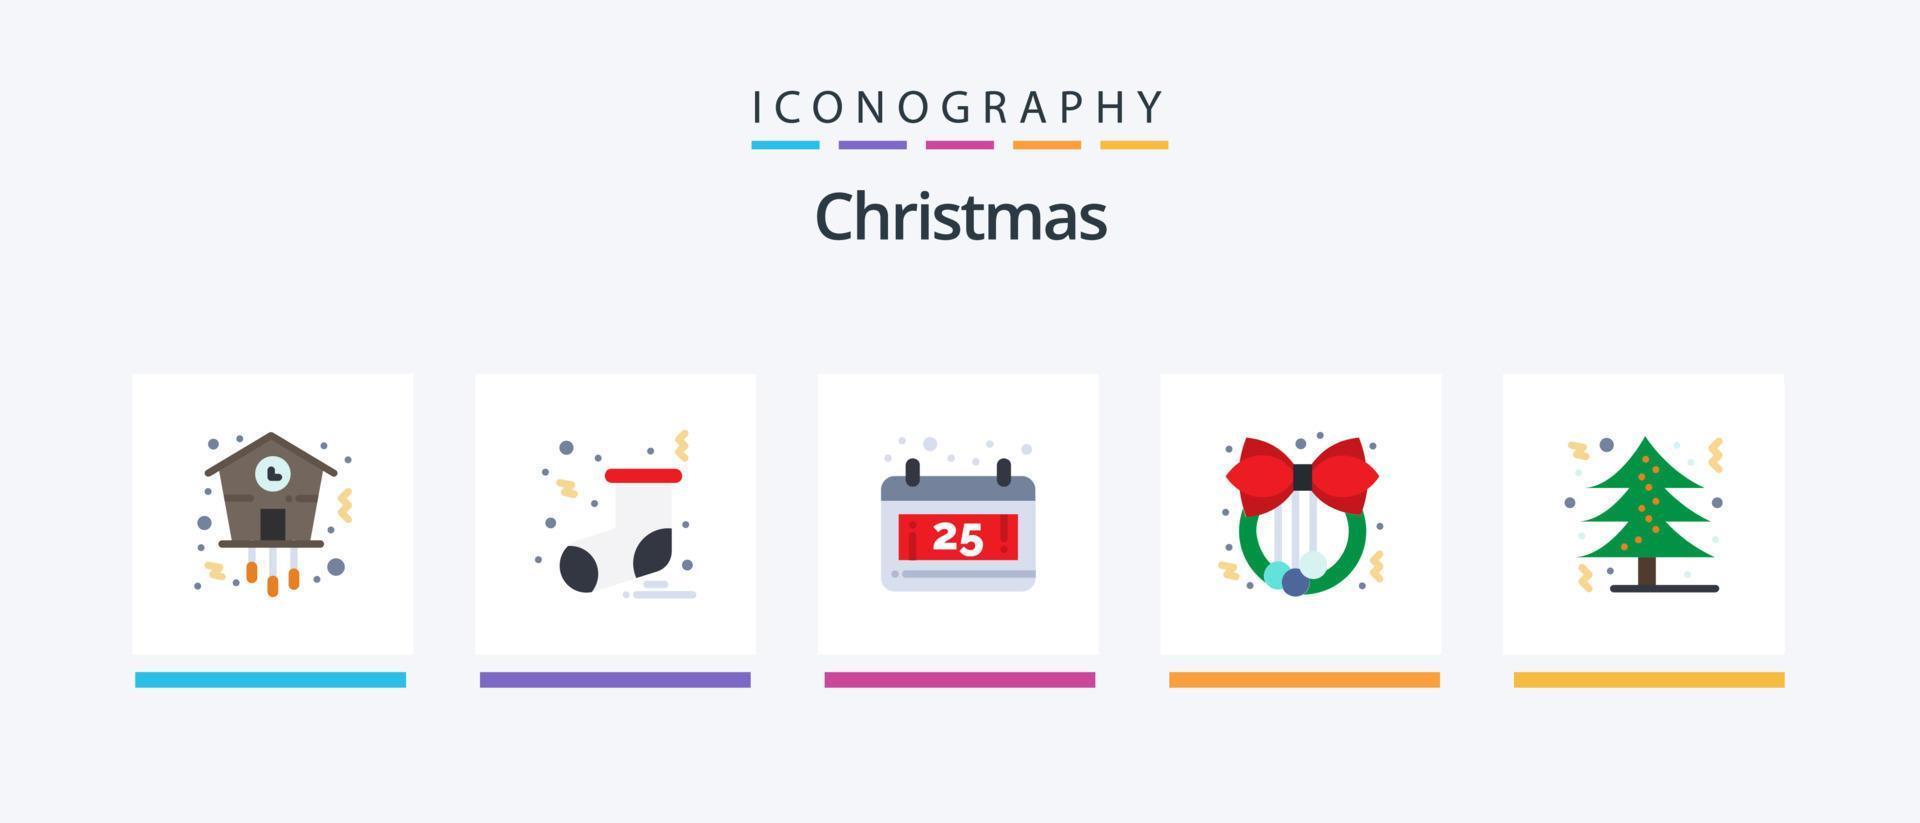 Kerstmis vlak 5 icoon pak inclusief boom. Kerstmis boom. kalender. kerstmis. decoratie. creatief pictogrammen ontwerp vector